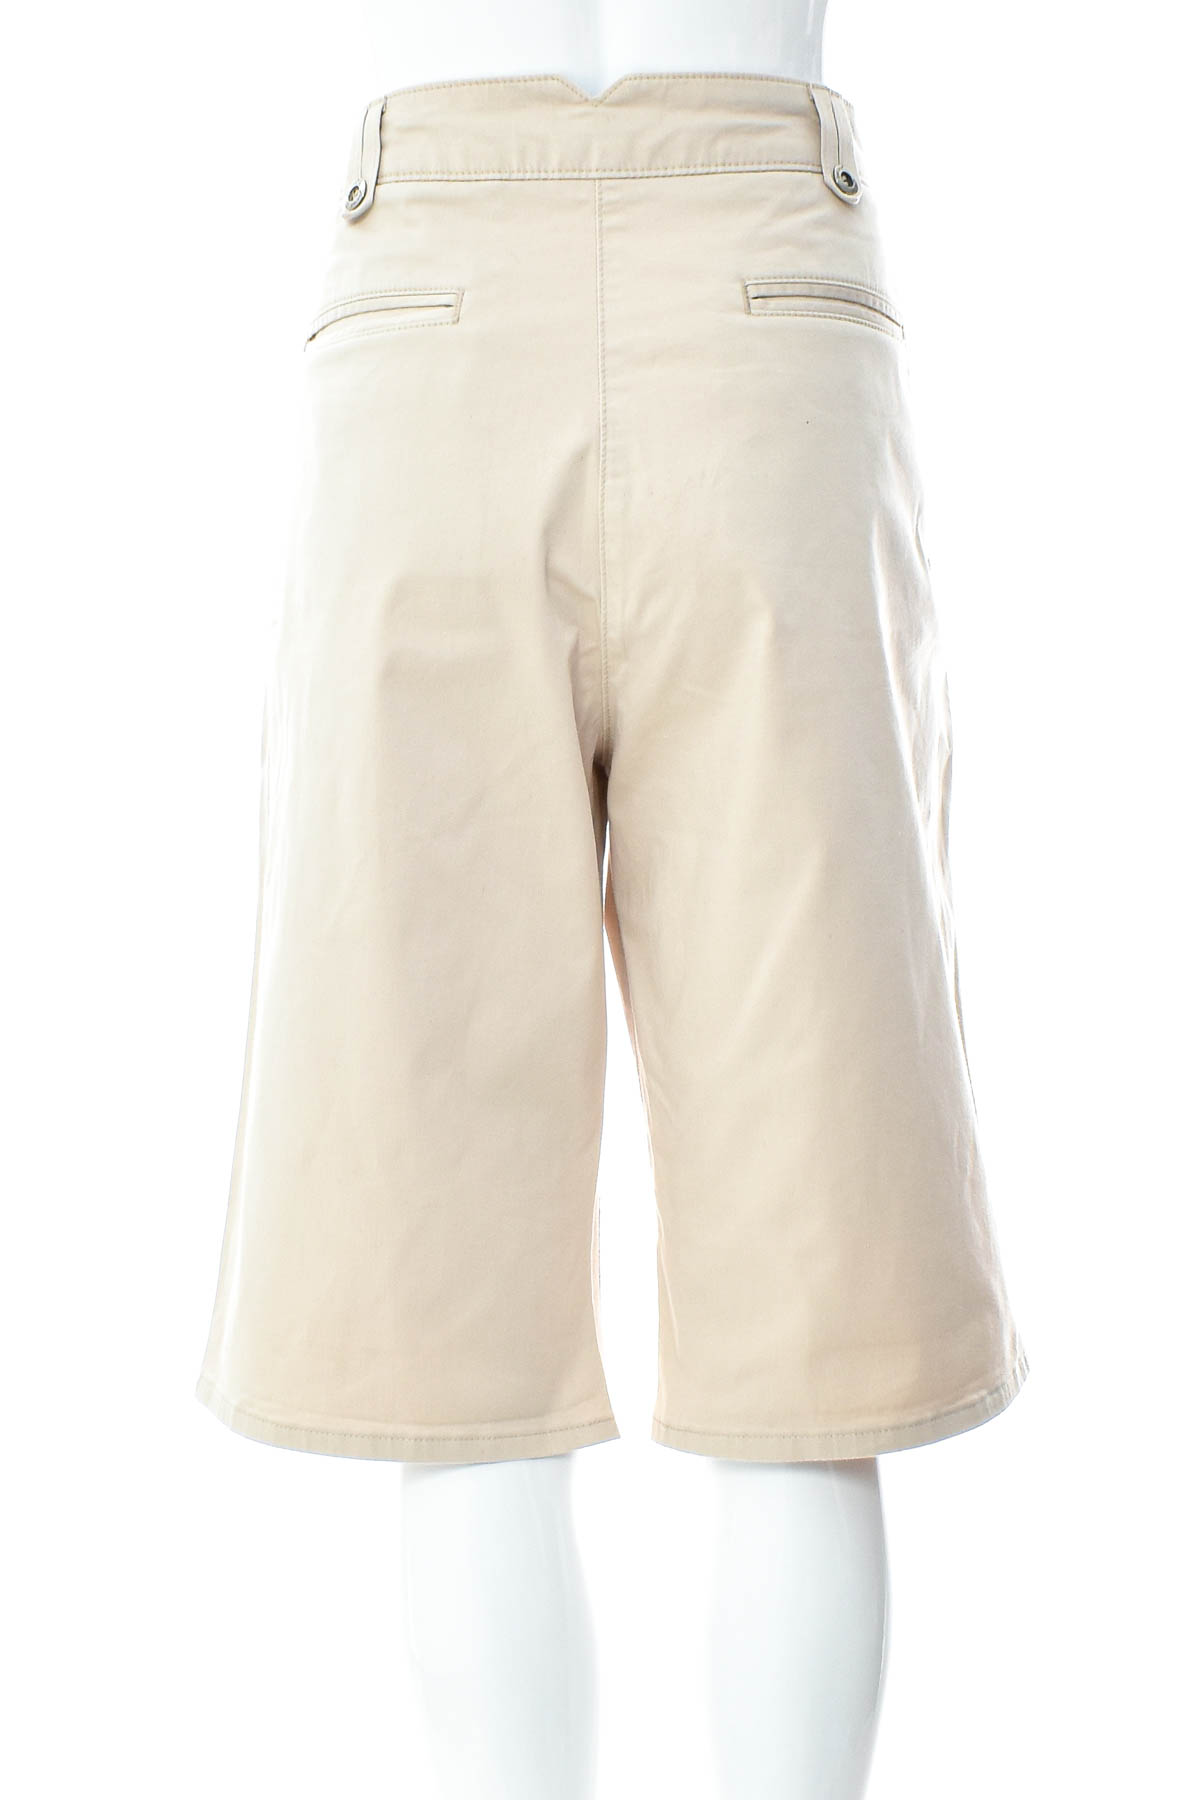 Krótkie spodnie damskie - PER UNA by M&S - 1